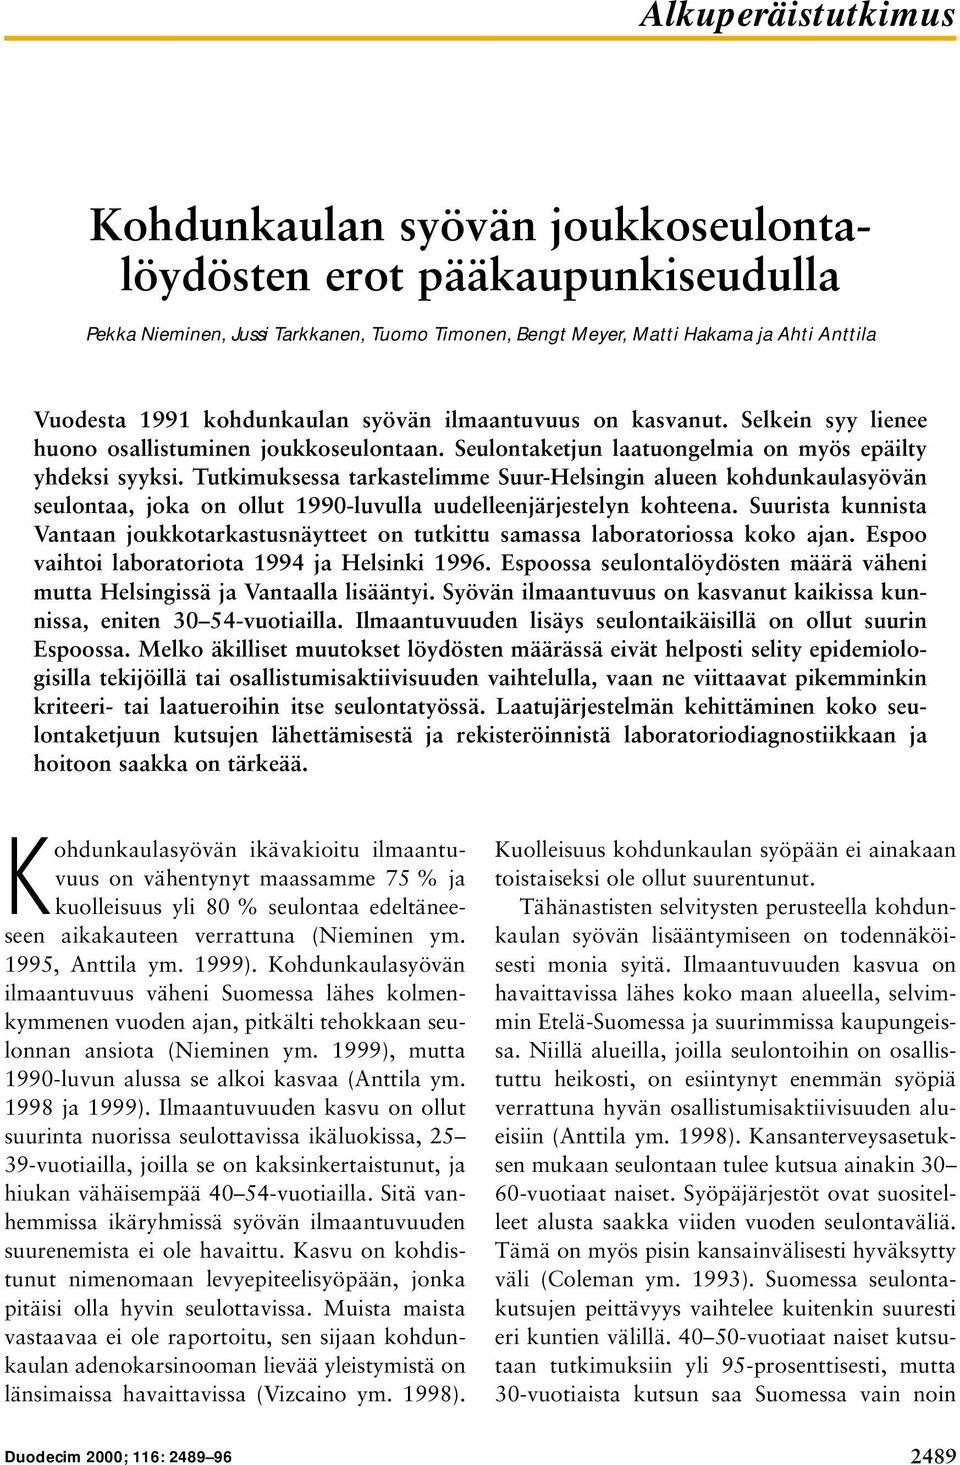 Tutkimuksessa tarkastelimme Suur-Helsingin alueen kohdunkaulasyövän seulontaa, joka on ollut 1990-luvulla uudelleenjärjestelyn kohteena.